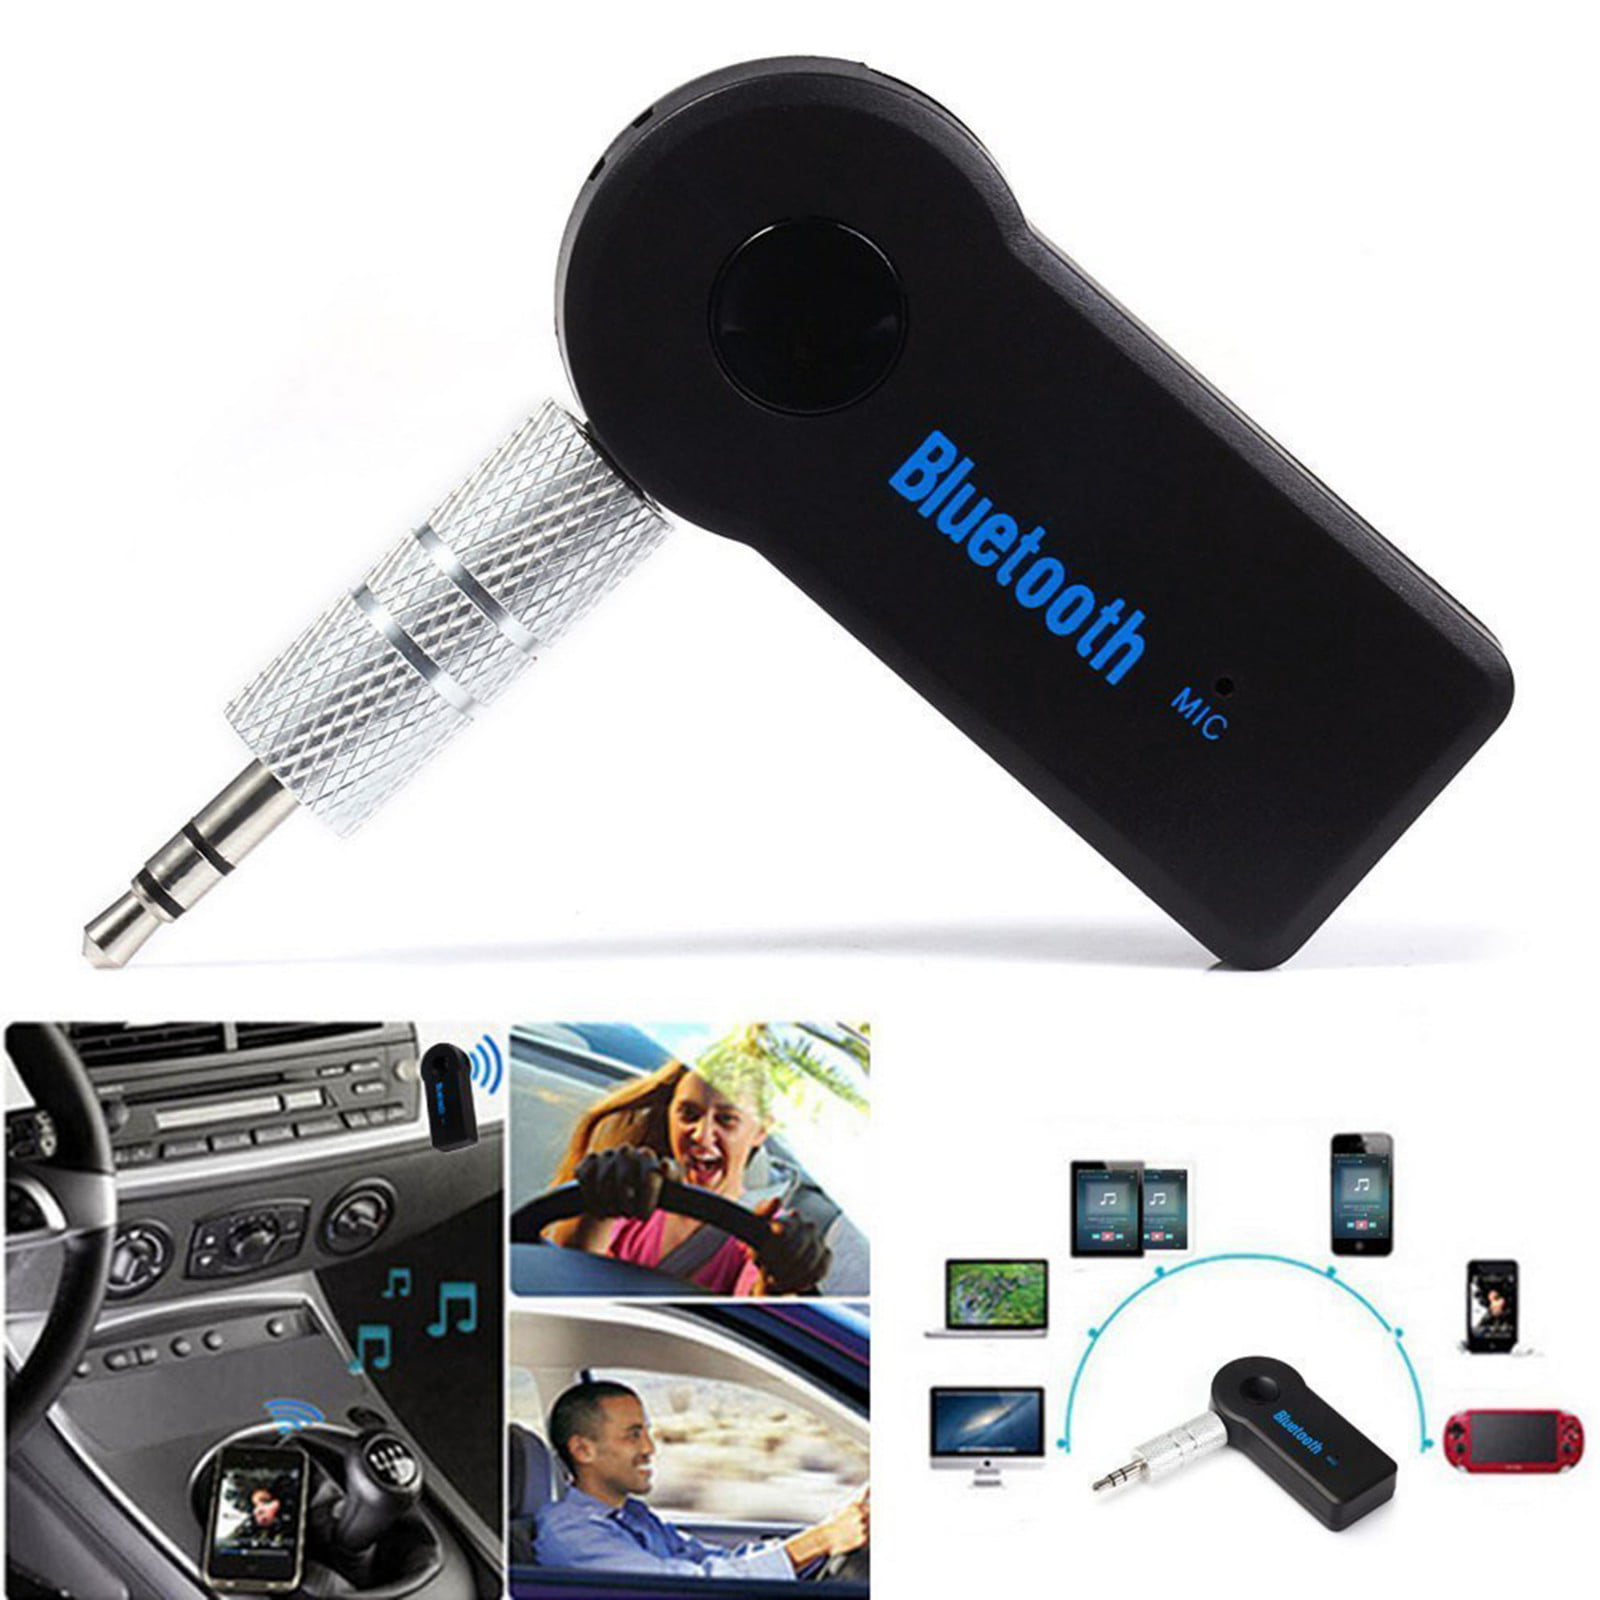 JLC Concept Bluetooth Receiver, Audio Receiver Car Kit